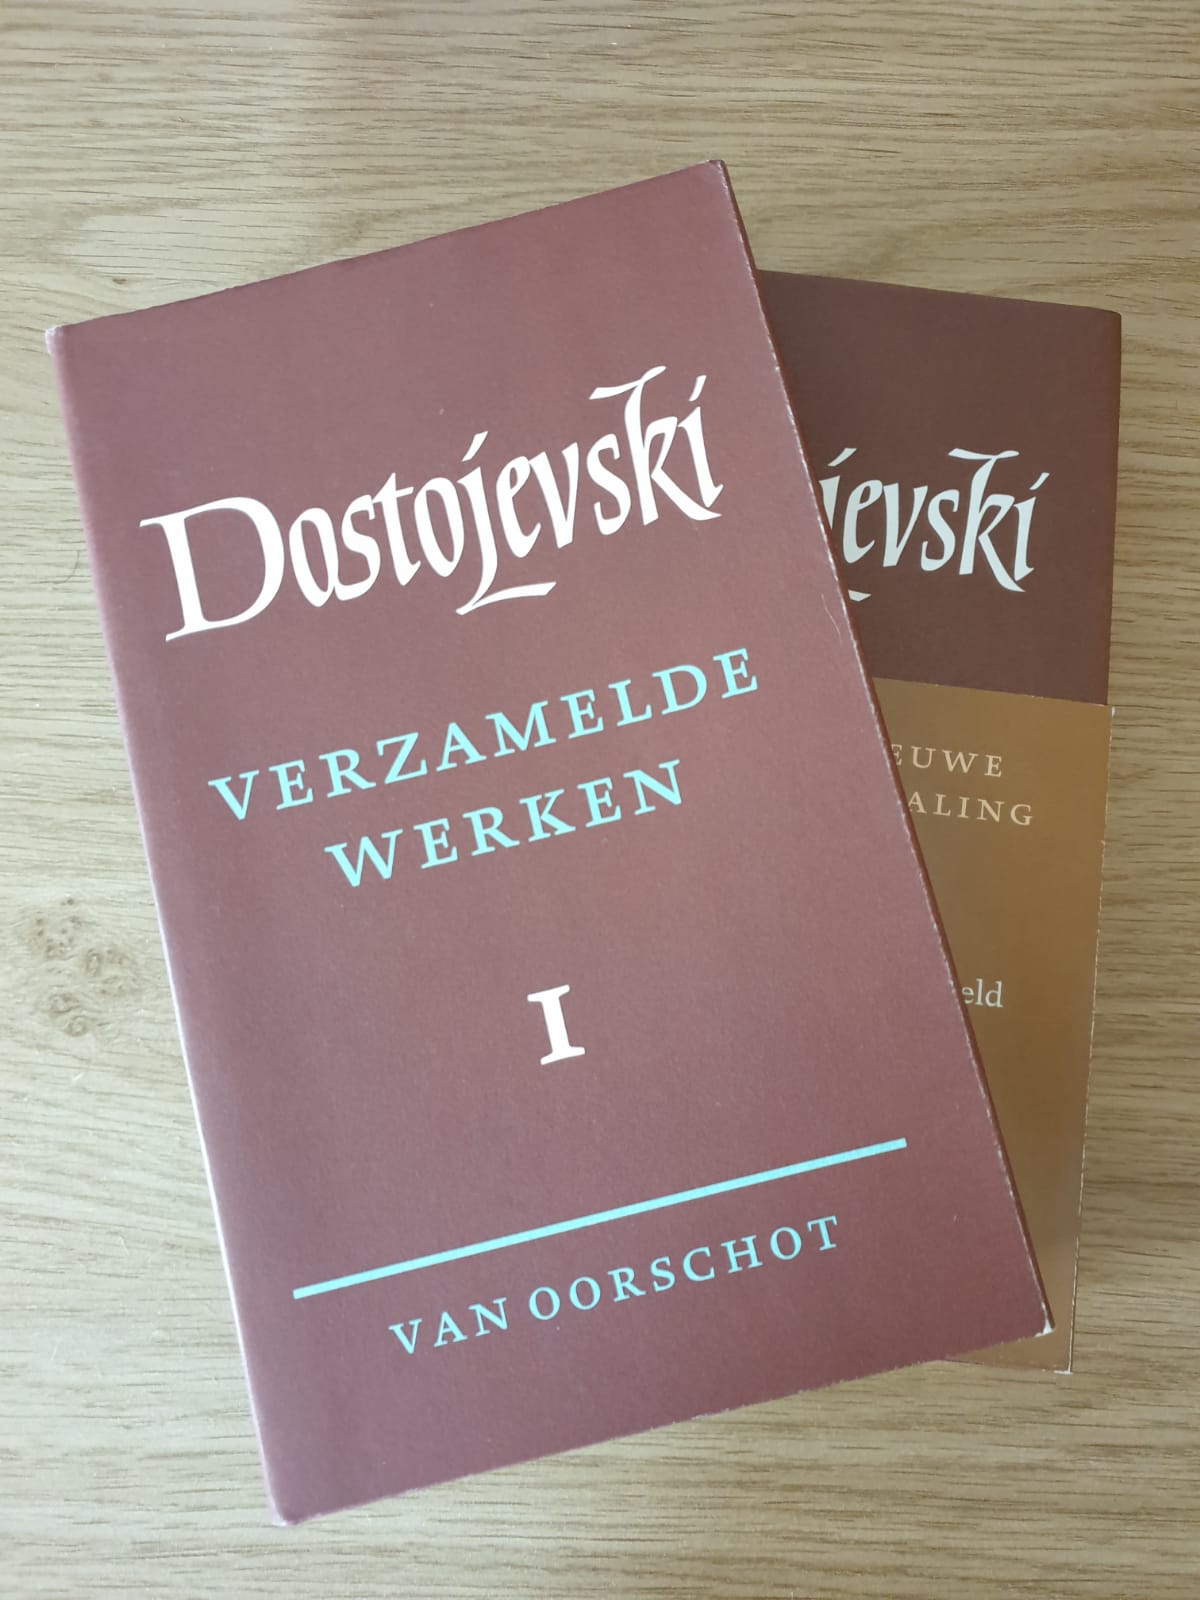 De waarde van Dostojevski voor rechtenstudenten